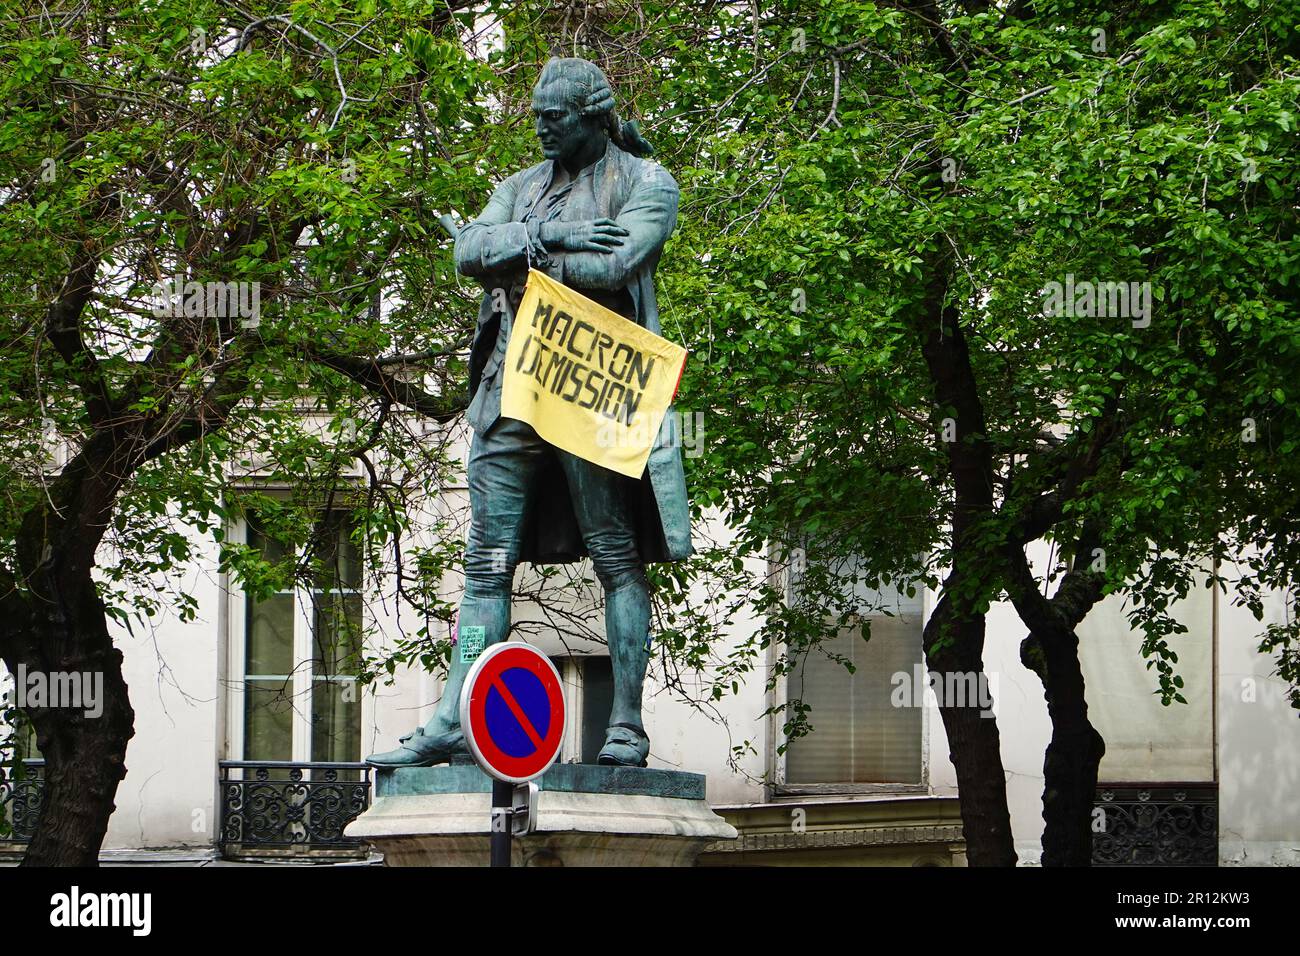 Statue von Beaumarchais mit dem Schild Macron démission, die sich auf die Gefühle gegen den französischen Präsidenten Macron wegen umstrittener Altersvorsorge bezieht. Stockfoto